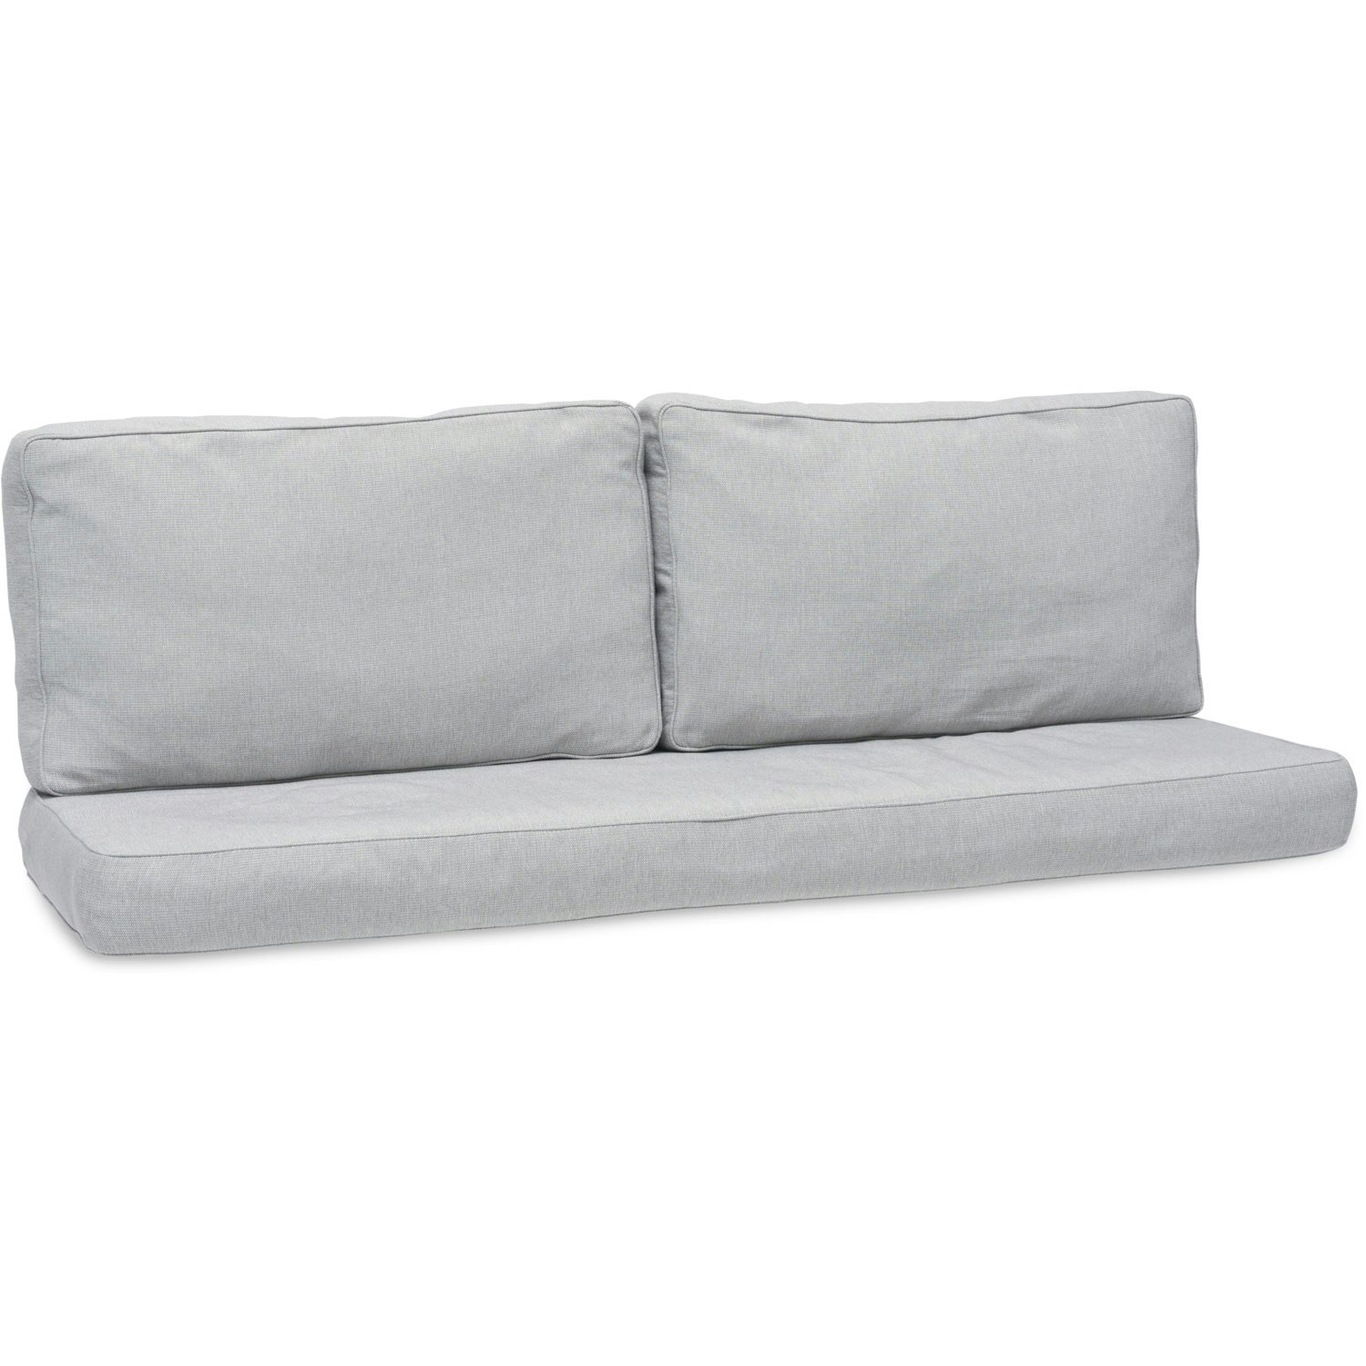 Gotland Cushions For Sofa, Grey